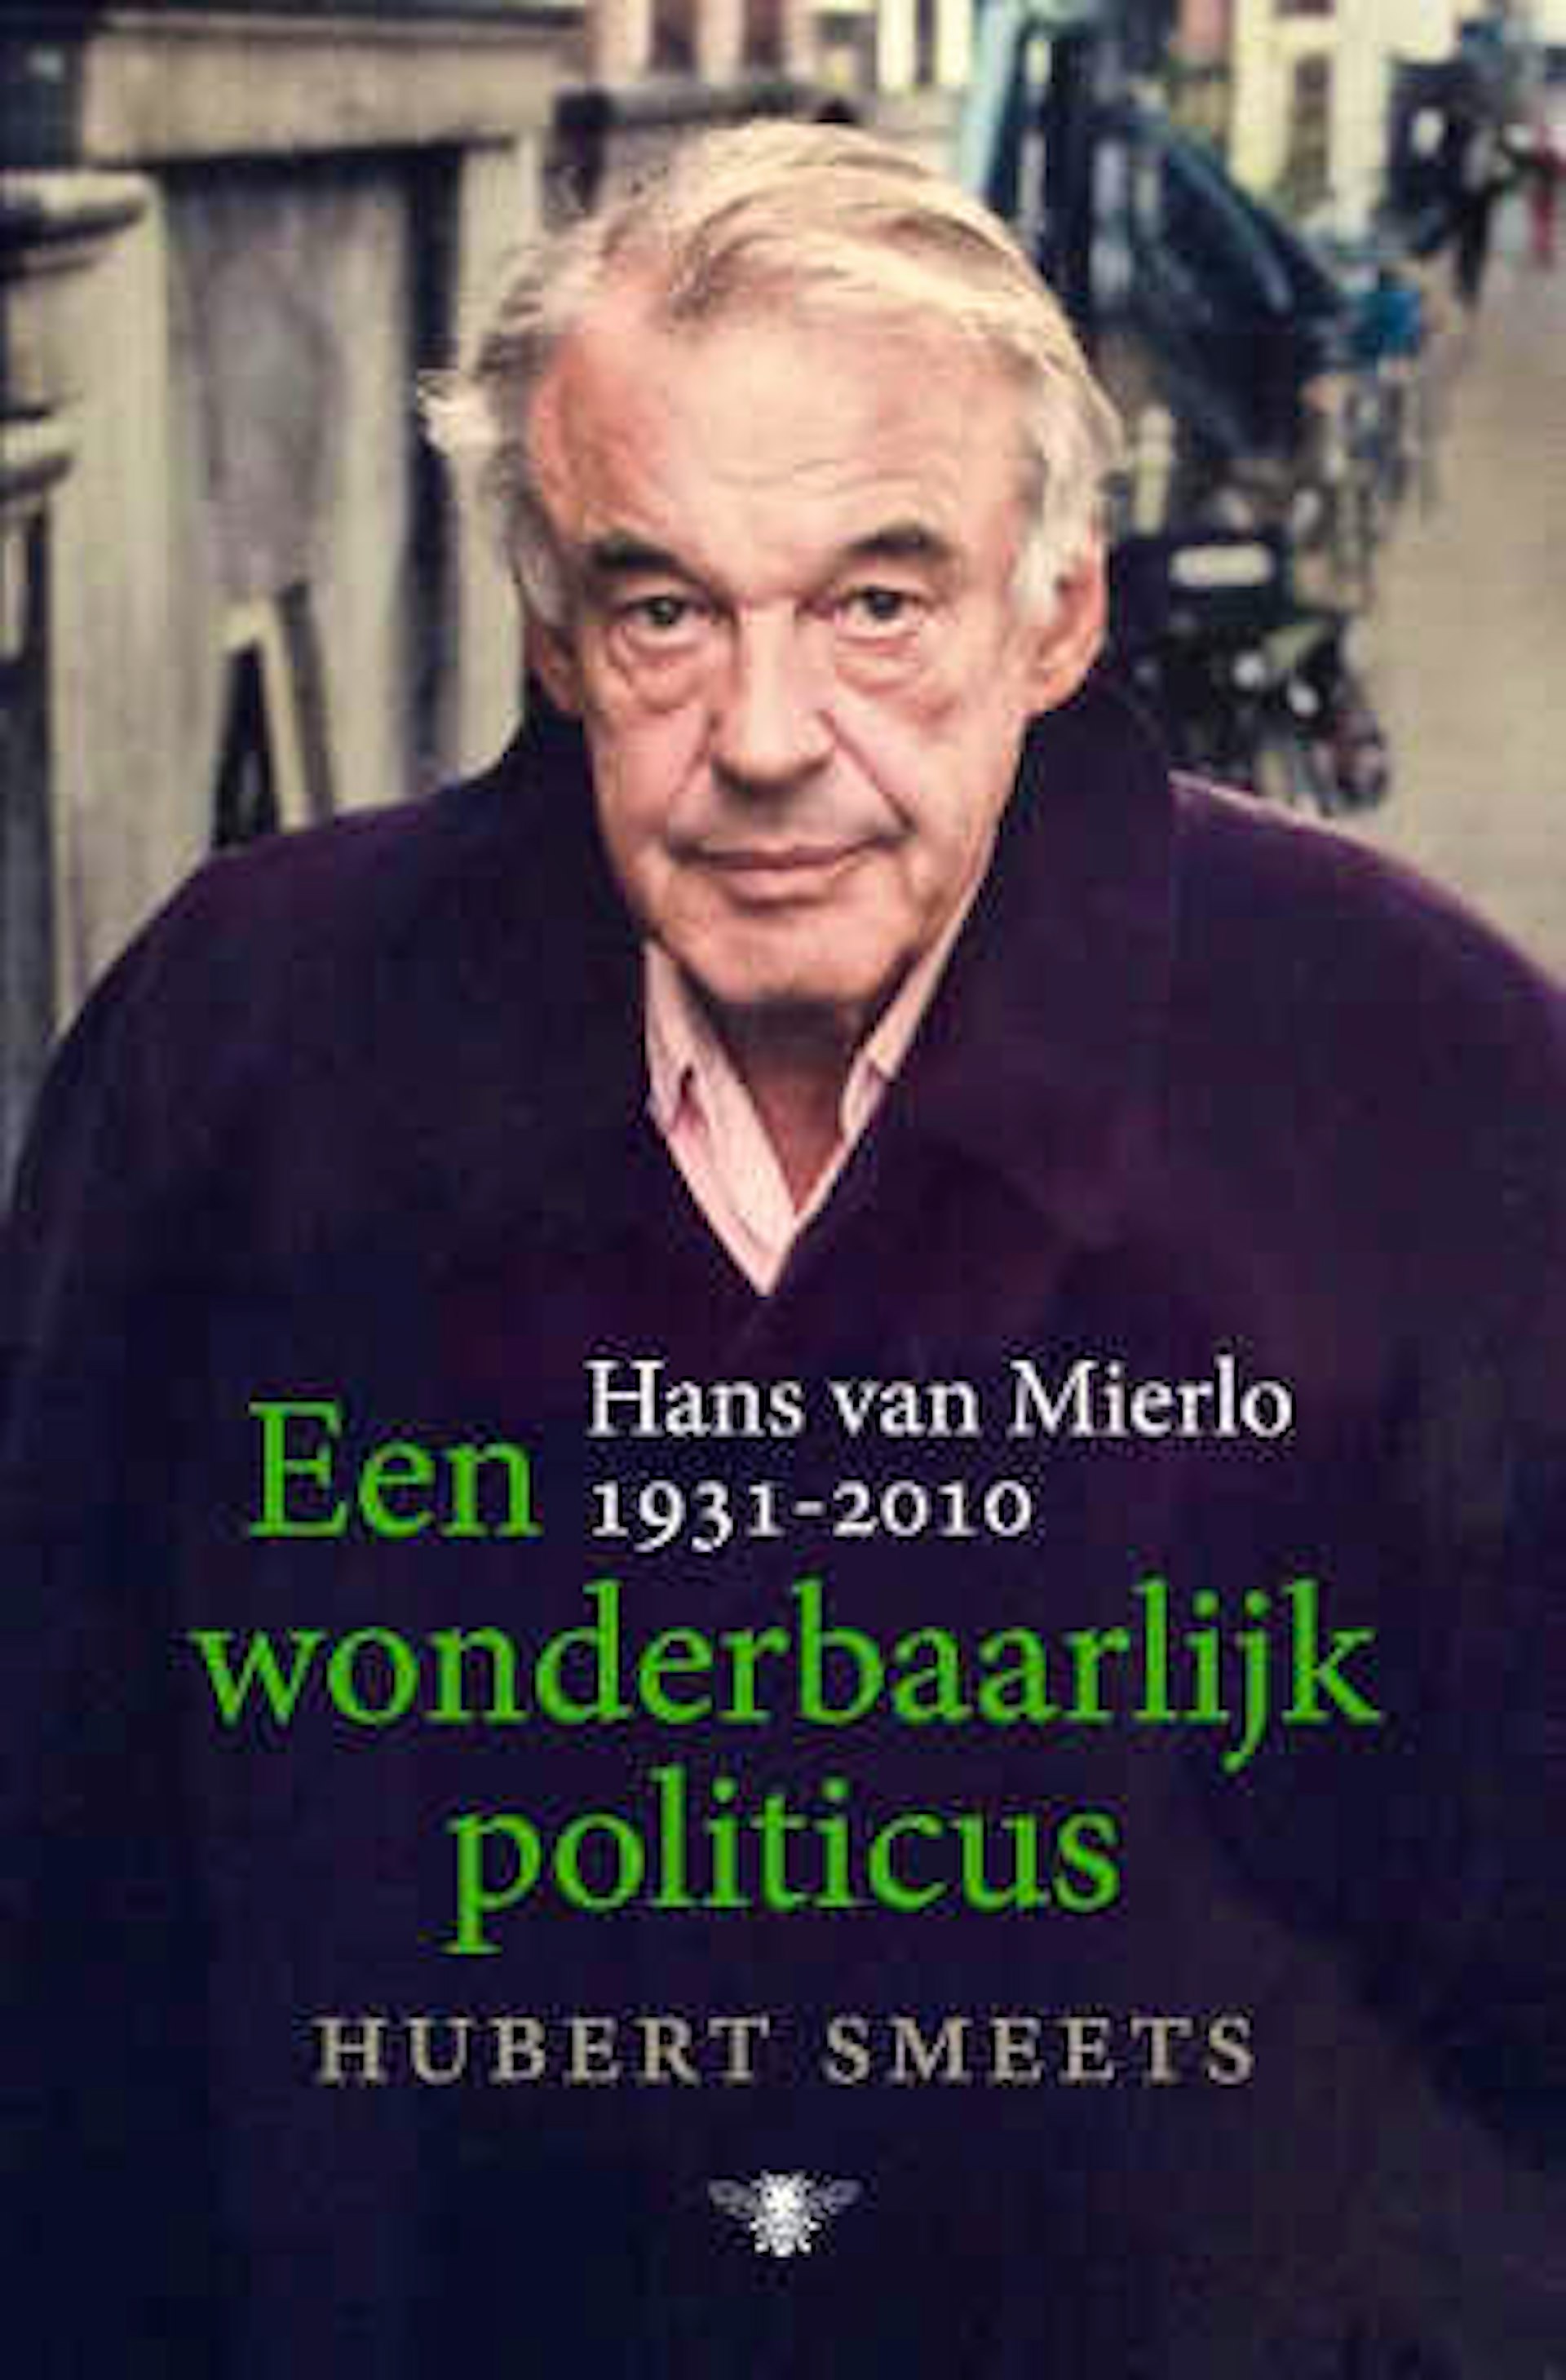 Biograaf Hubert Smeets over Hans van Mierlo